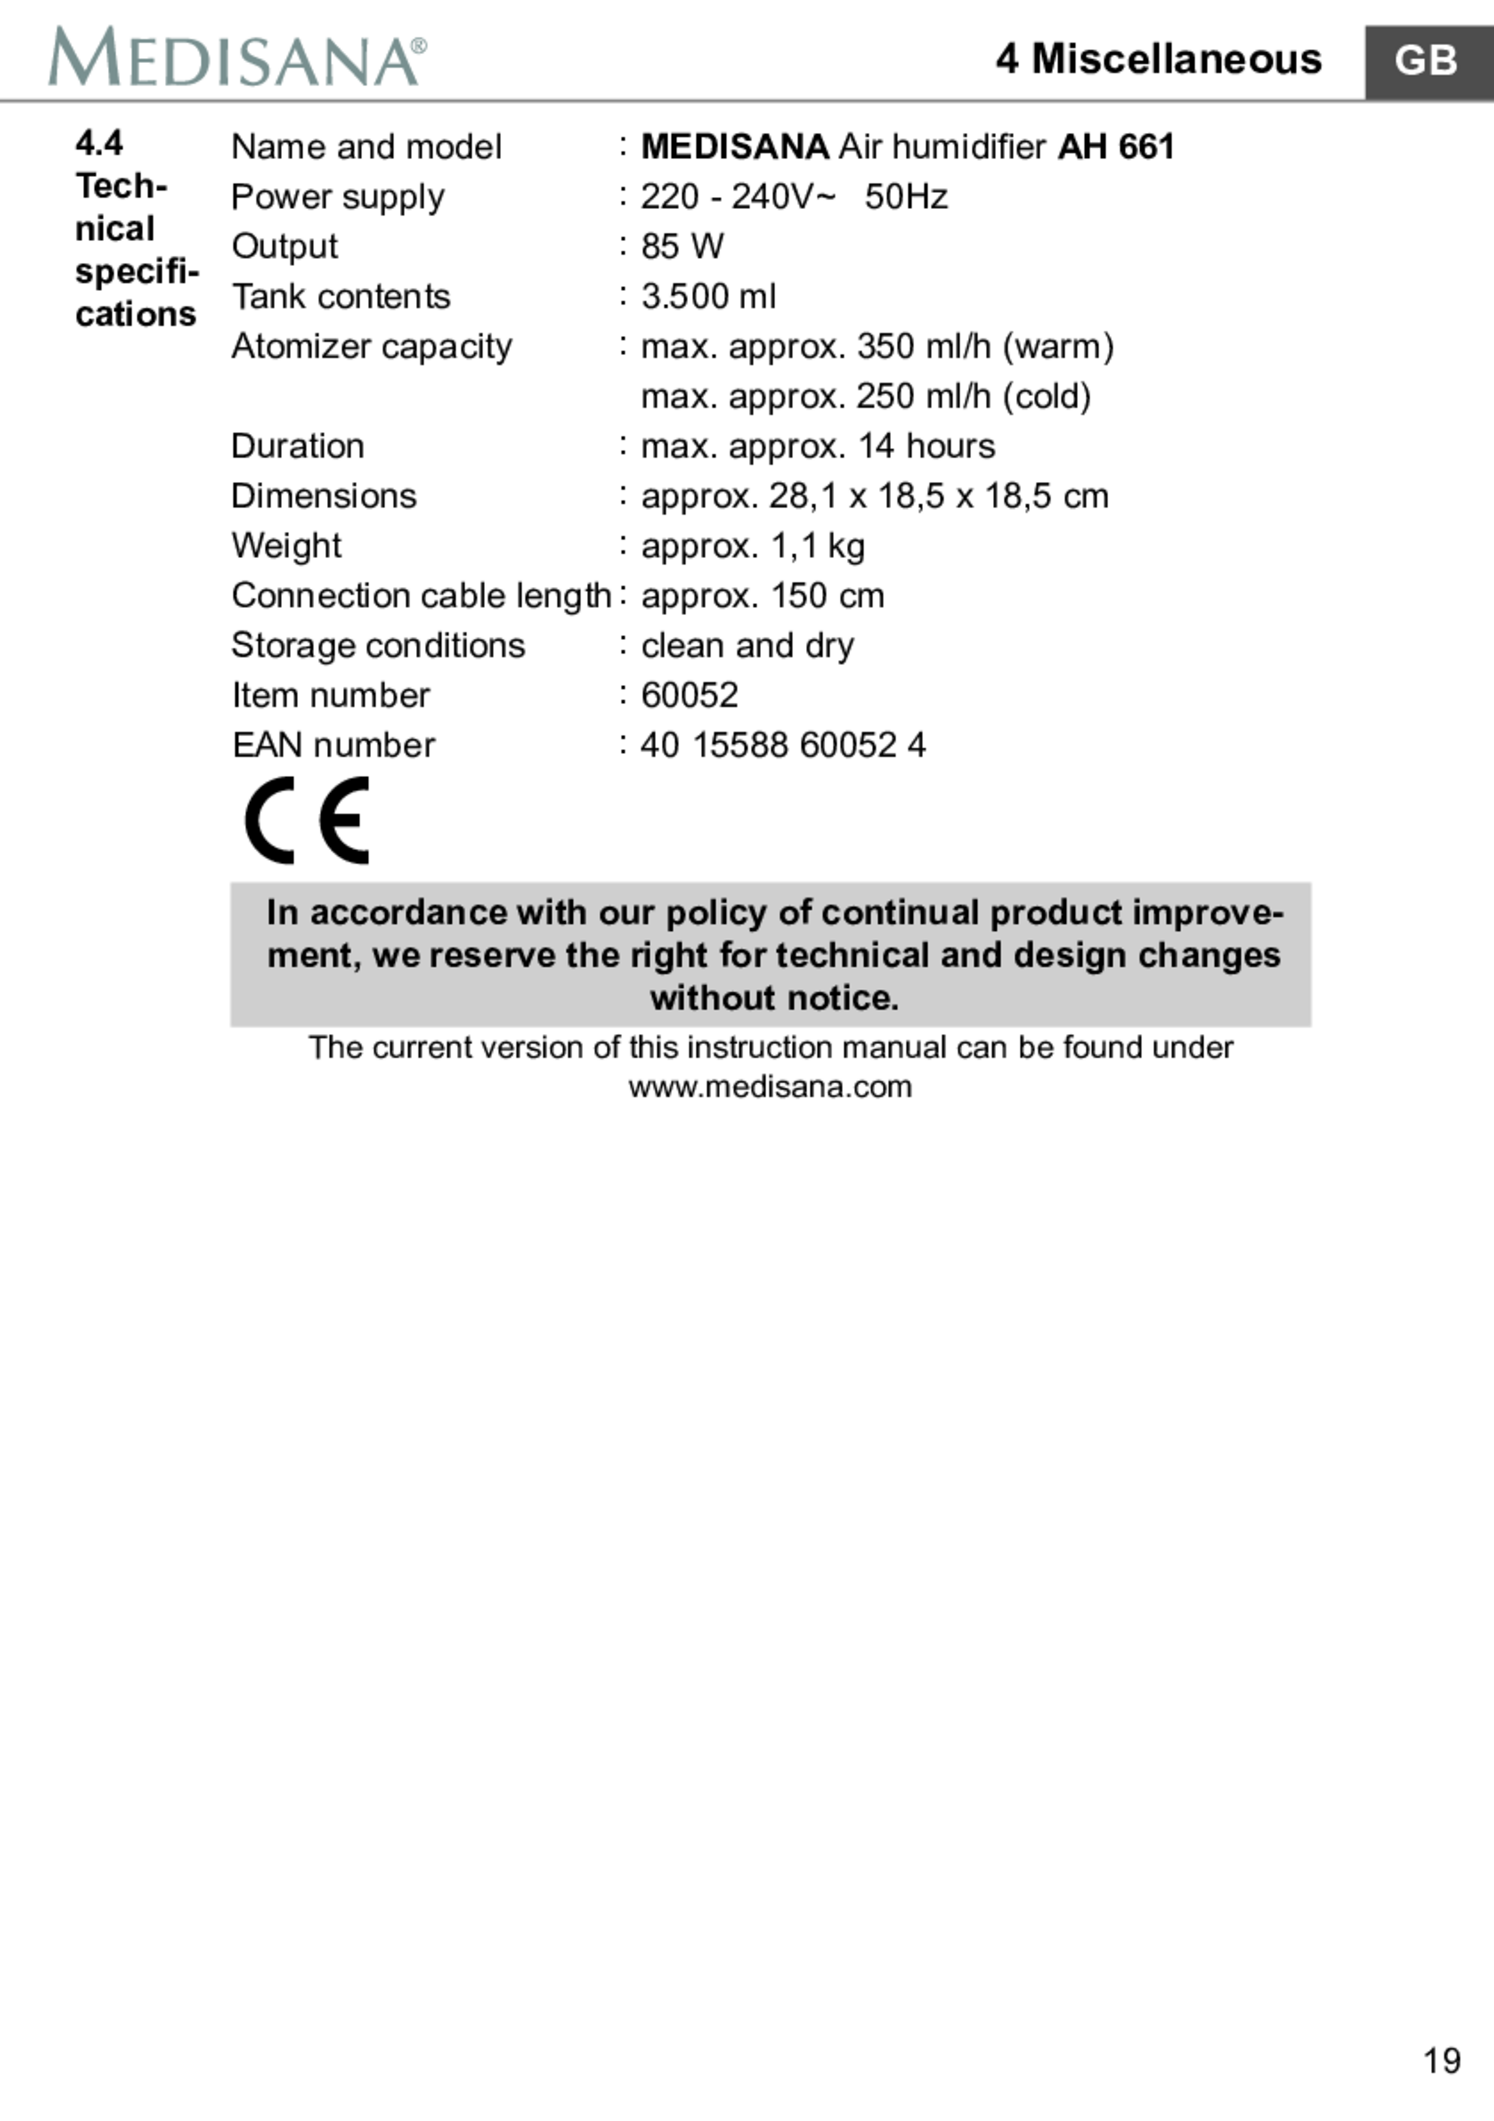 AH 661 Luchtbevochtiger afbeelding van document #25, gebruiksaanwijzing